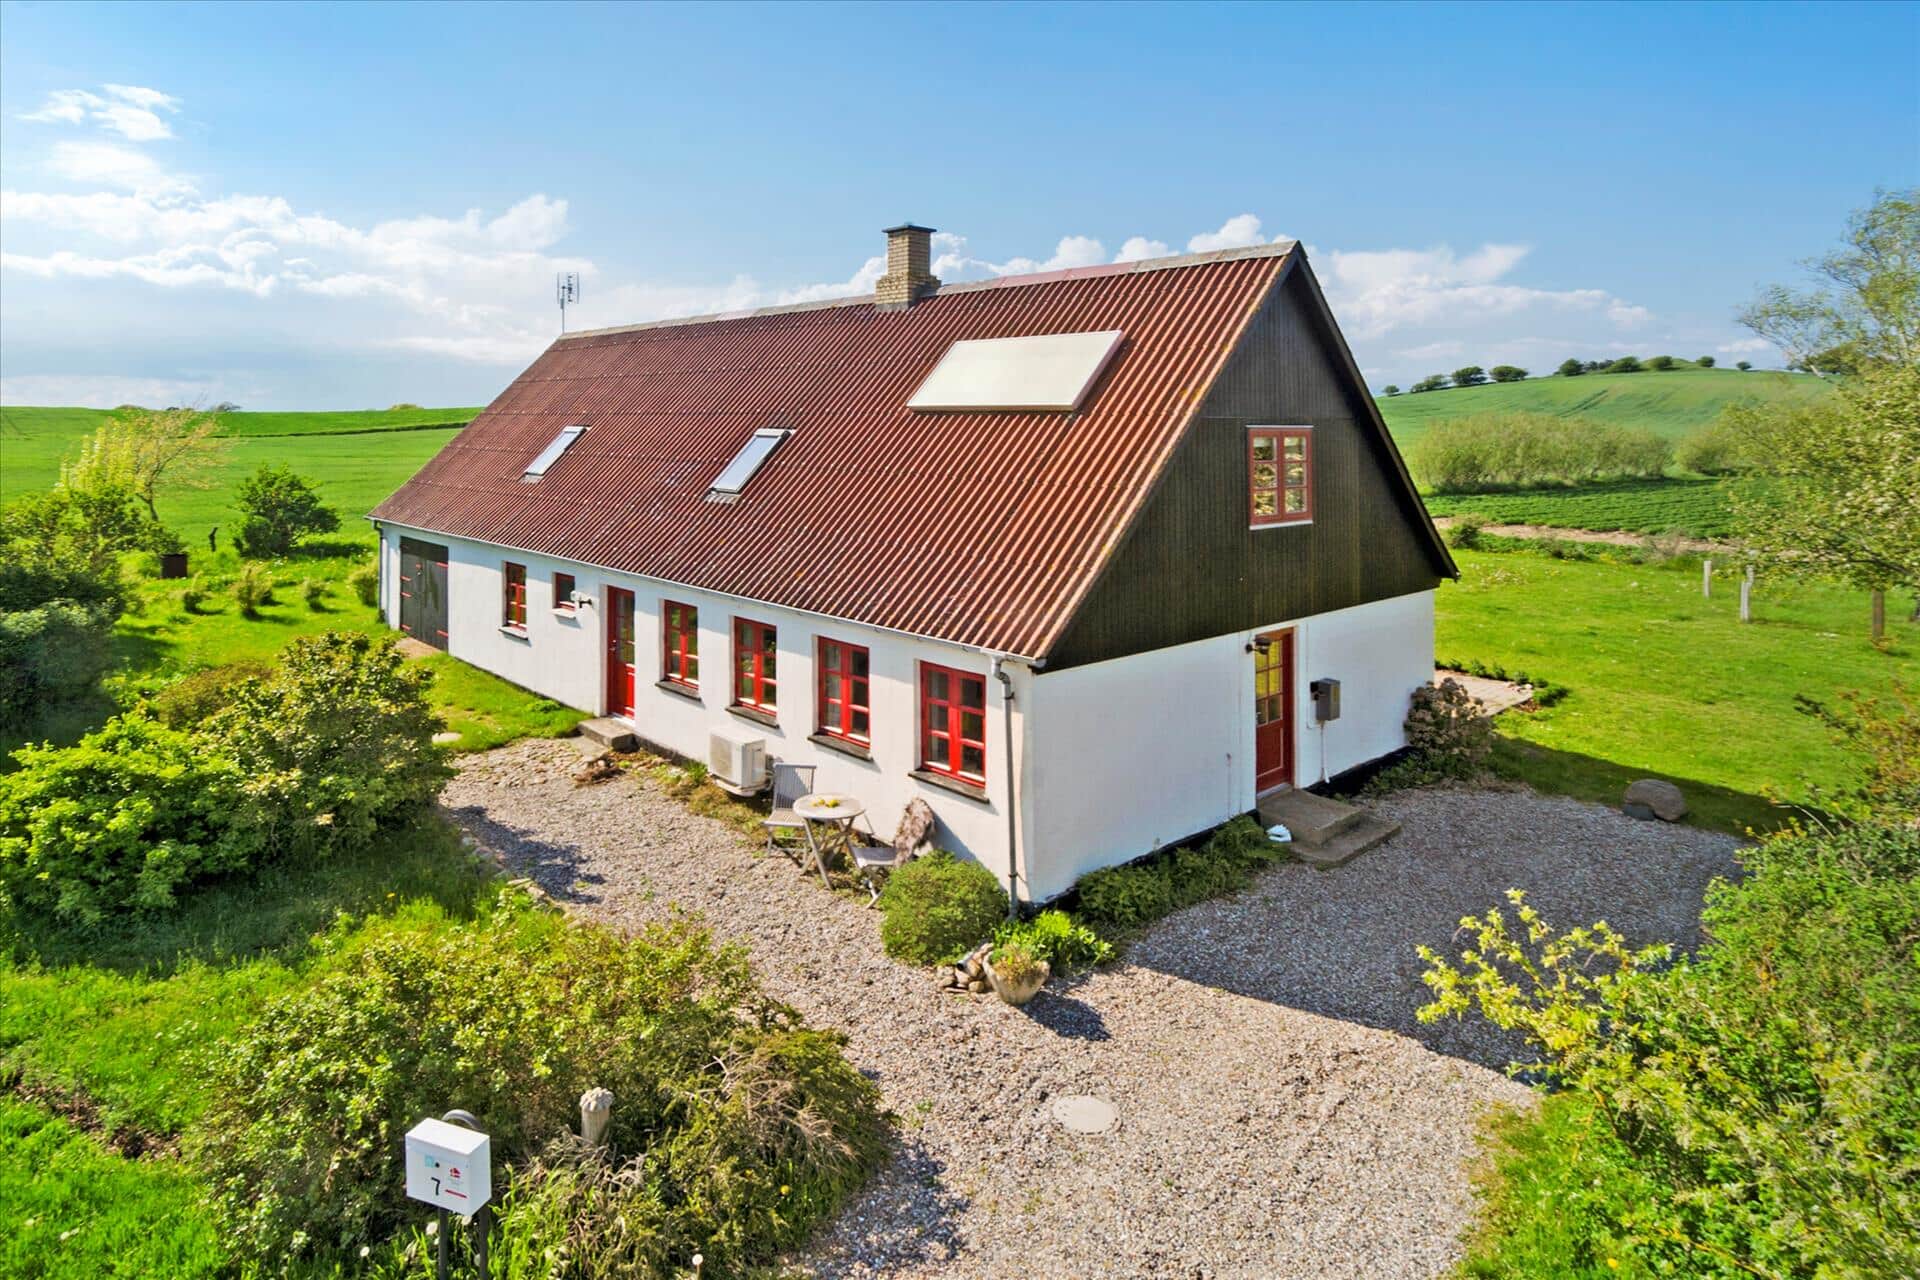 Image 0-170 Holiday-home 20206, Haardmark Mark 7, DK - 8305 Samsø